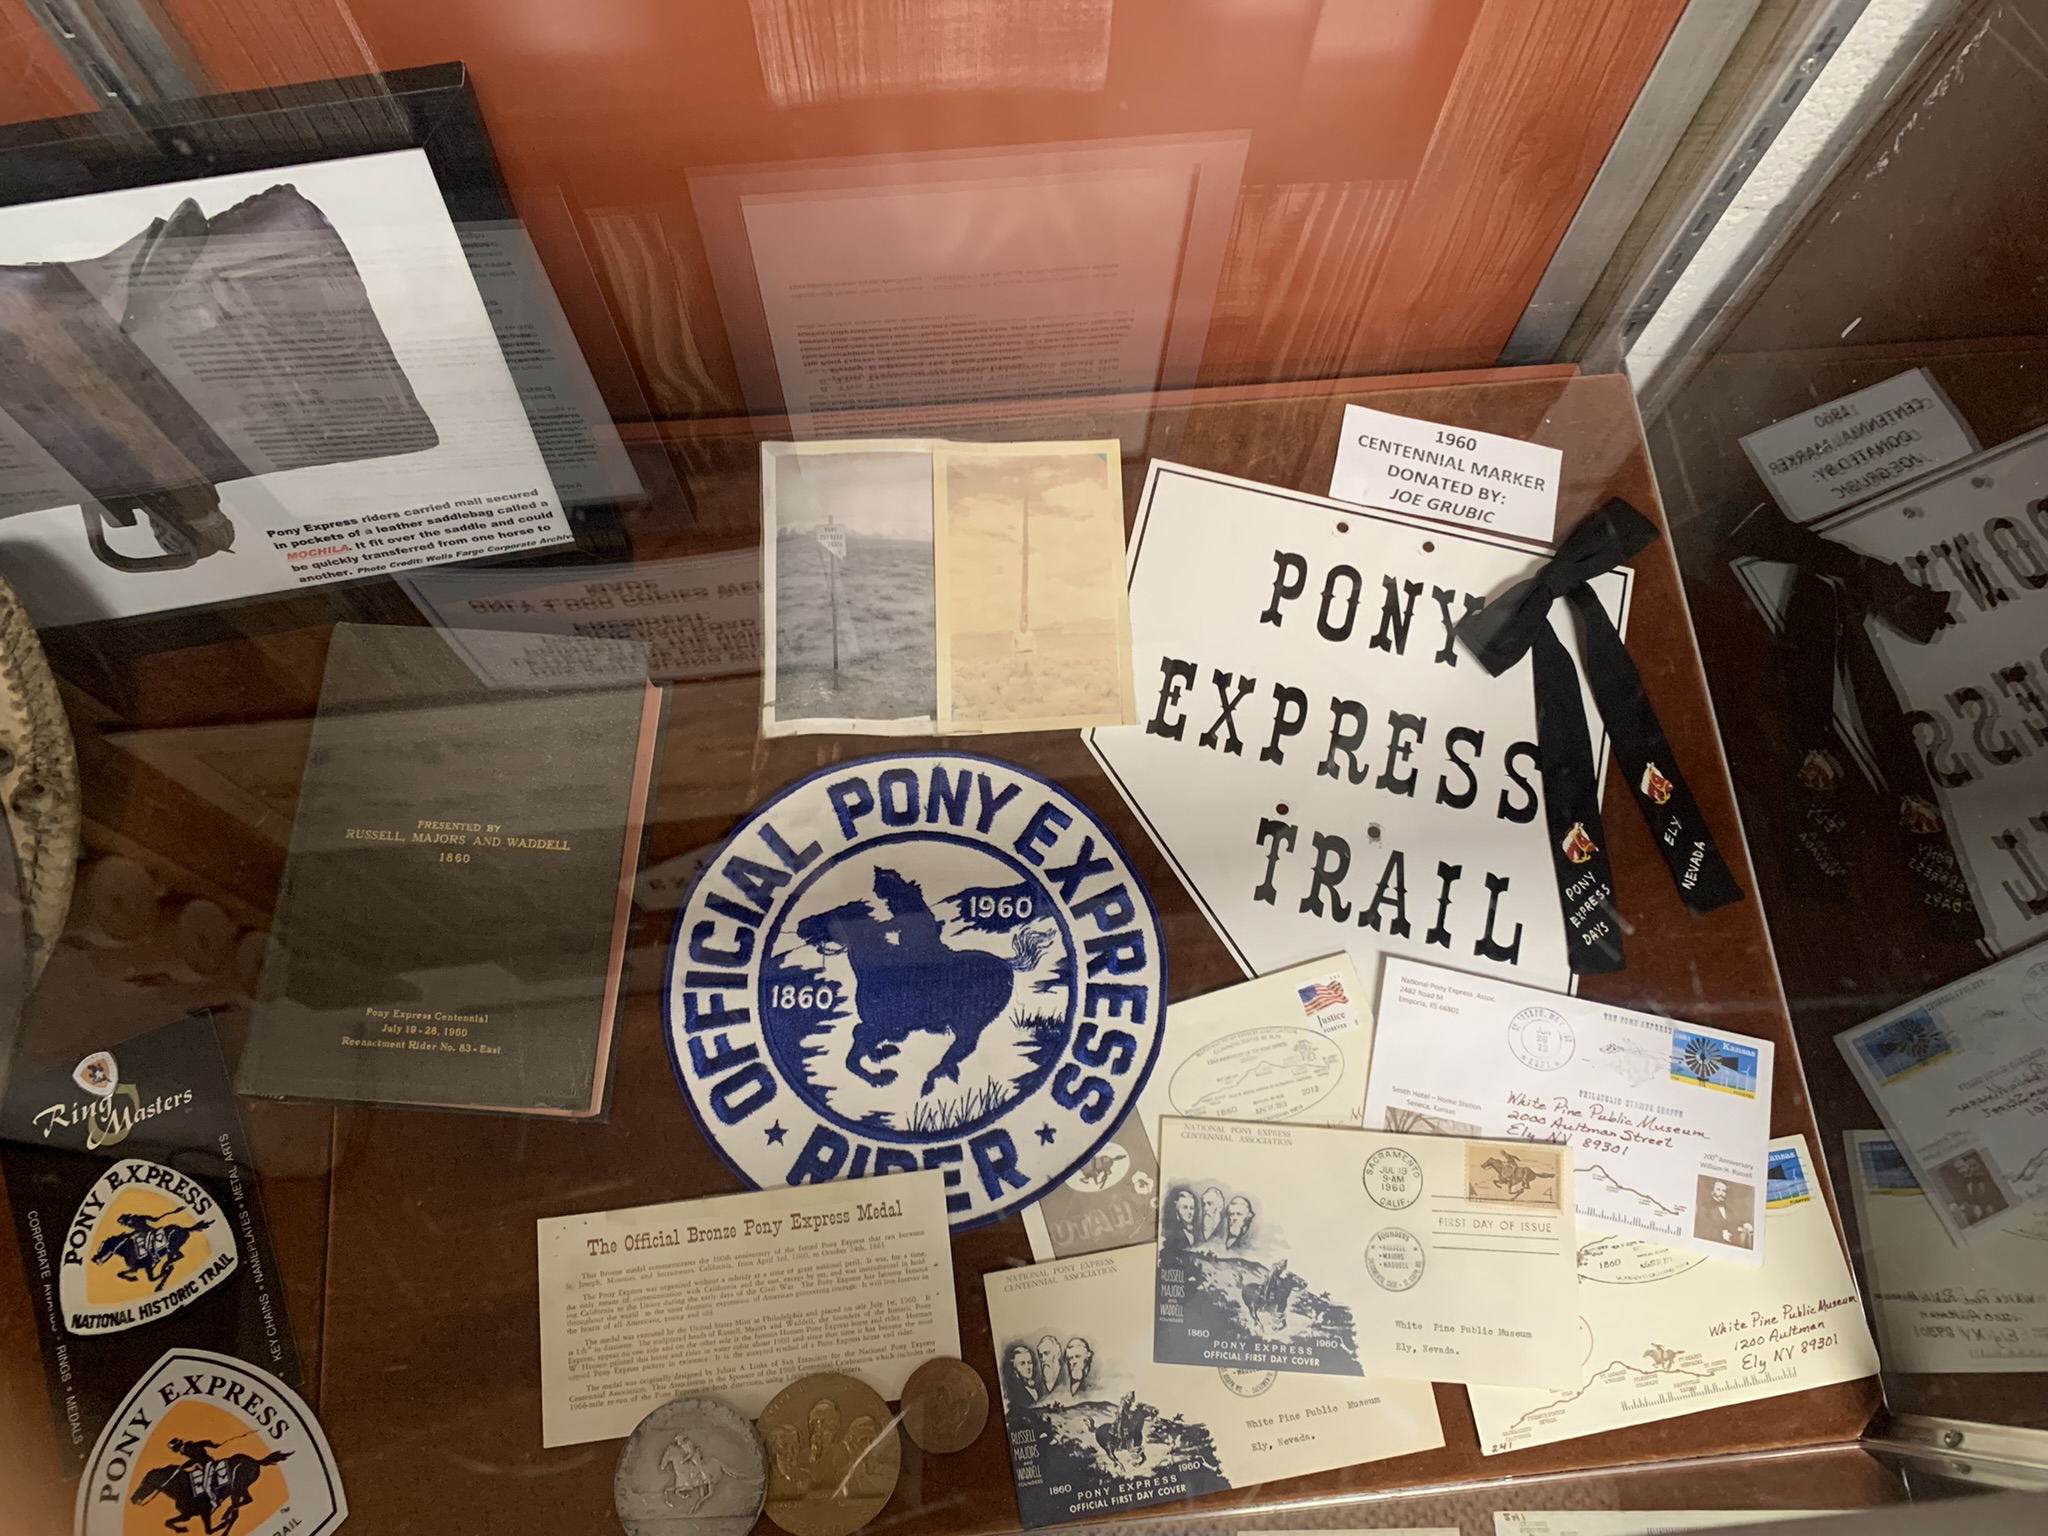 Pony Express Exhibit White Pine Museum